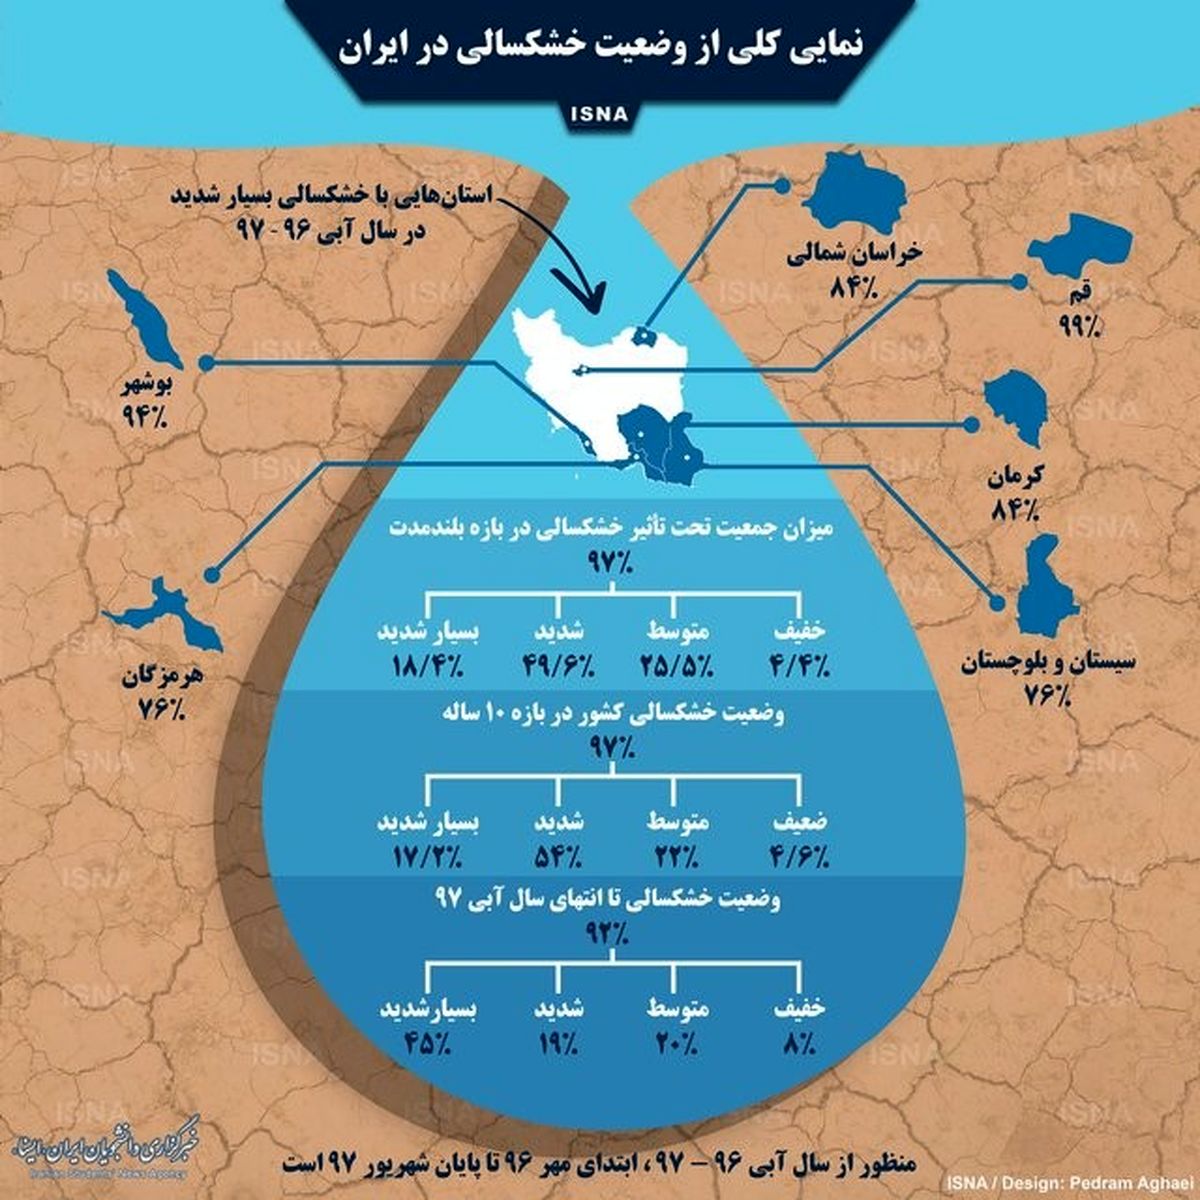 اینفوگرافی / نمایی کلی از وضعیت خشکسالی در ایران